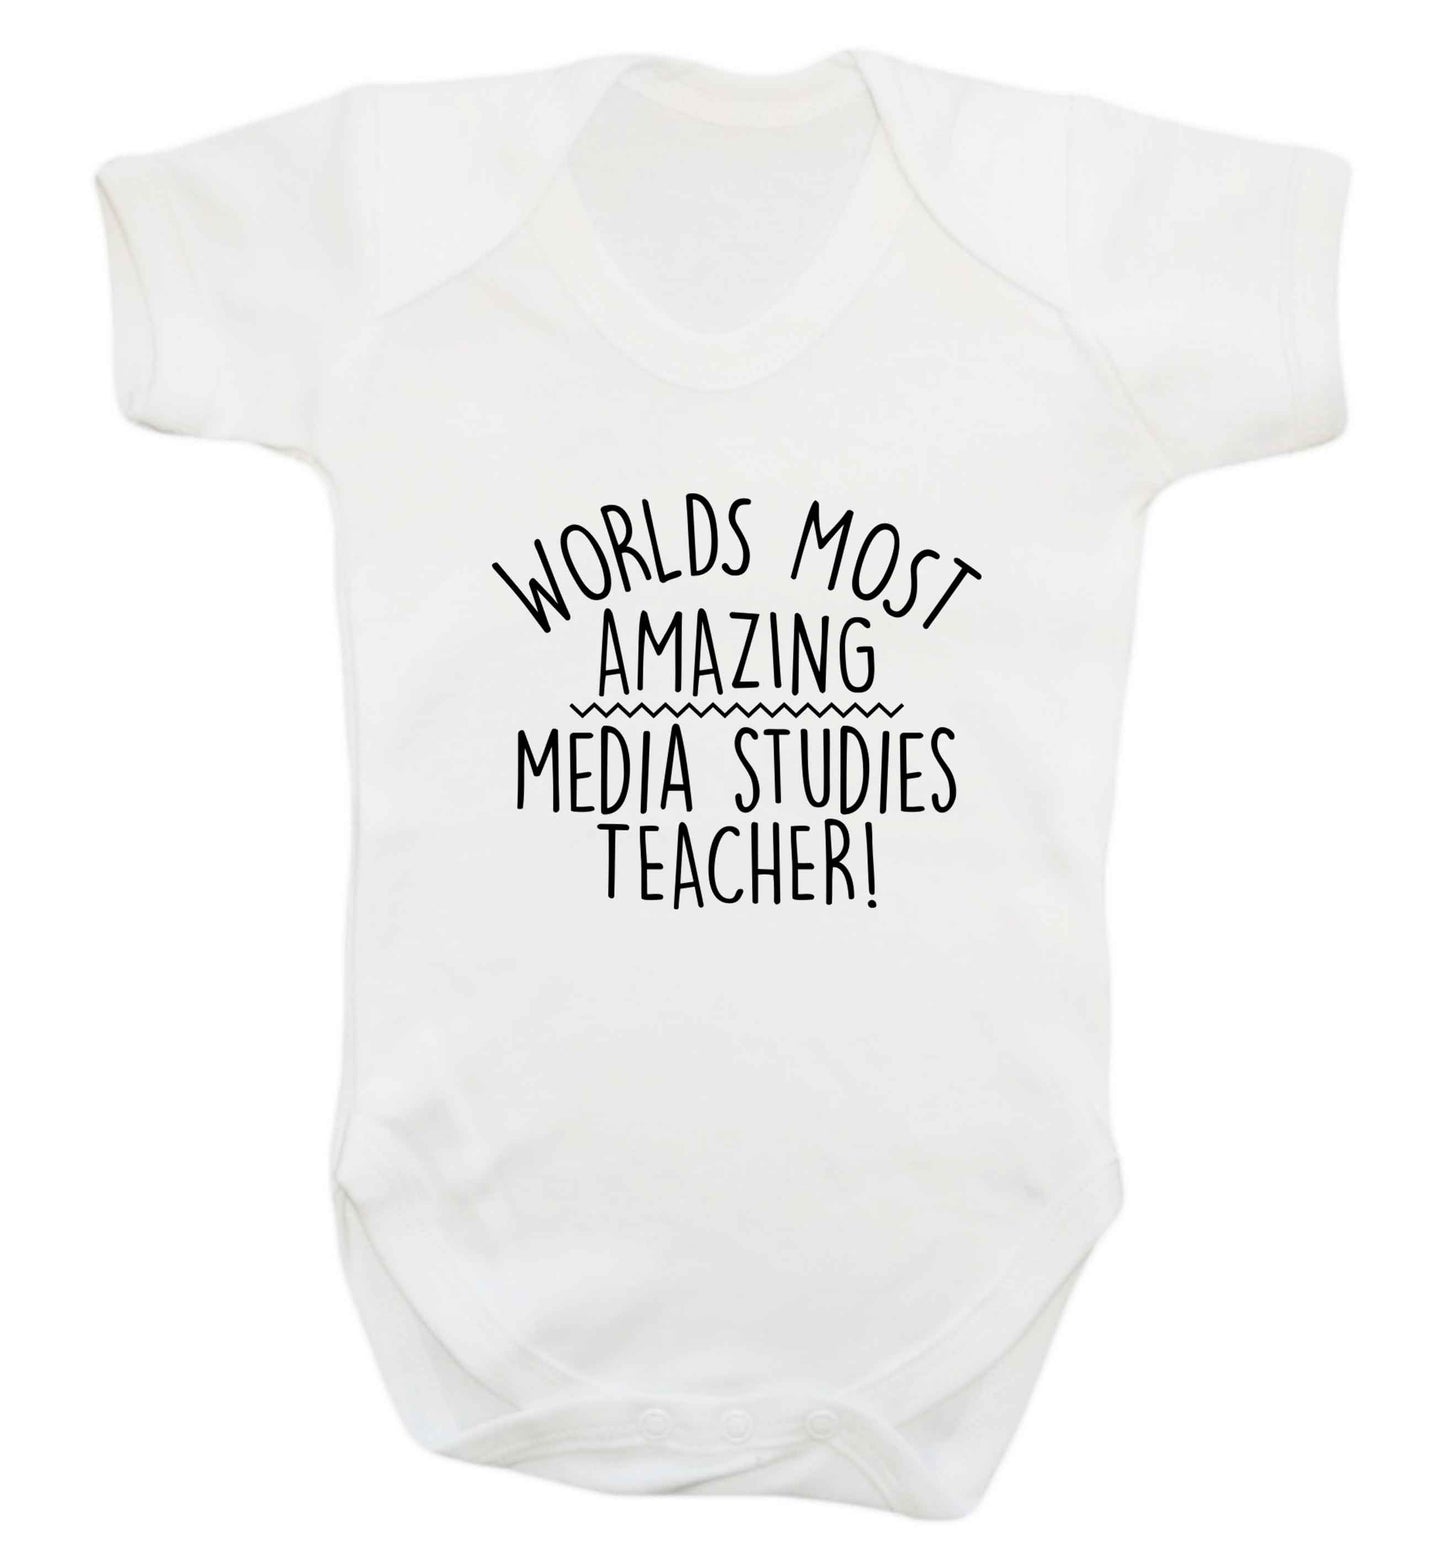 Worlds most amazing media studies teacher baby vest white 18-24 months